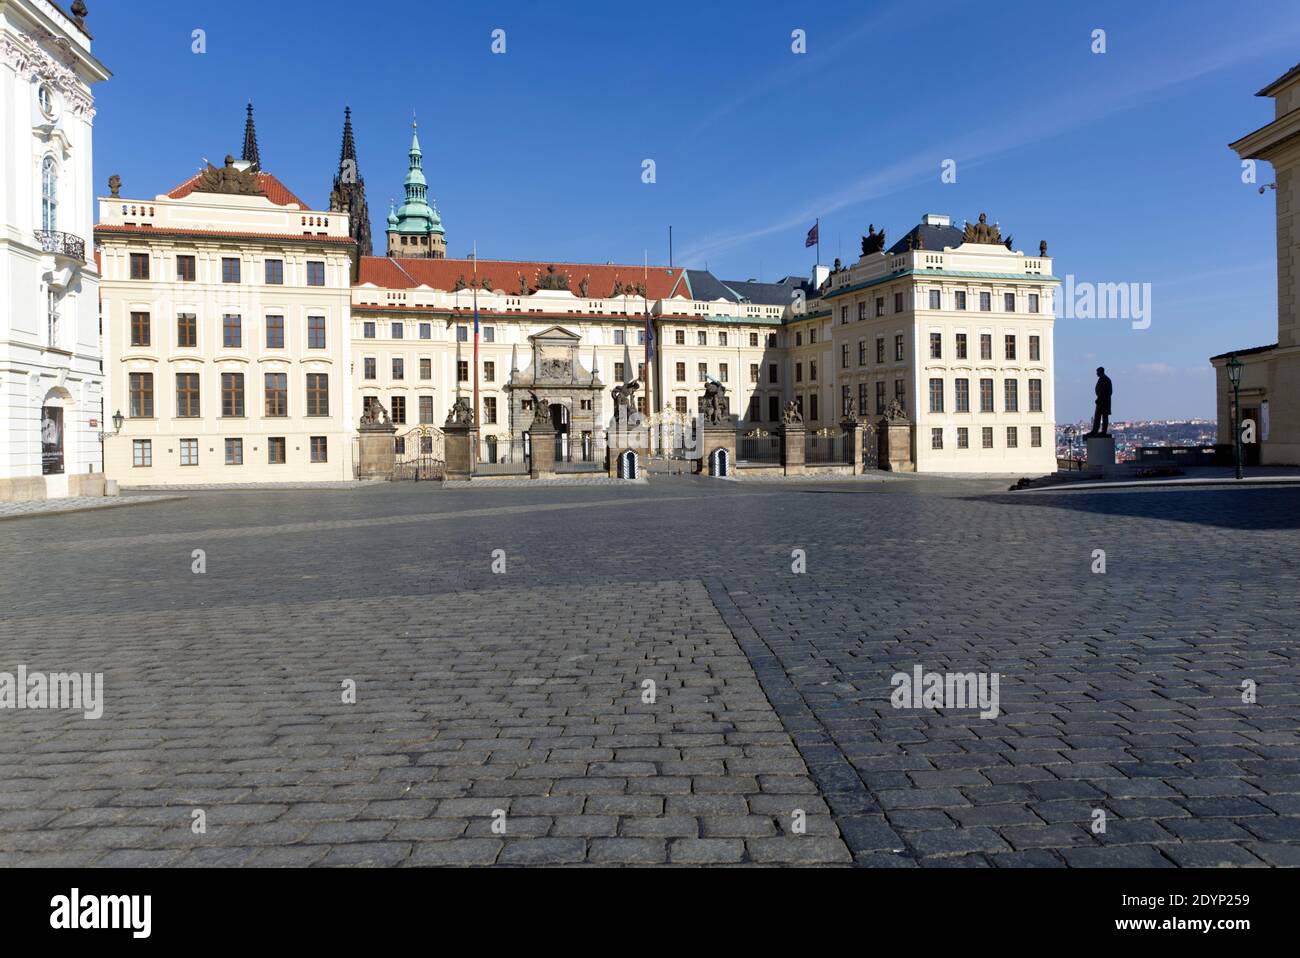 Pohled přes prázdné Hradčanské náměstí na Pražský hrad, část Arcibiskupského paláce a sochu T.G.M. Stock Photo